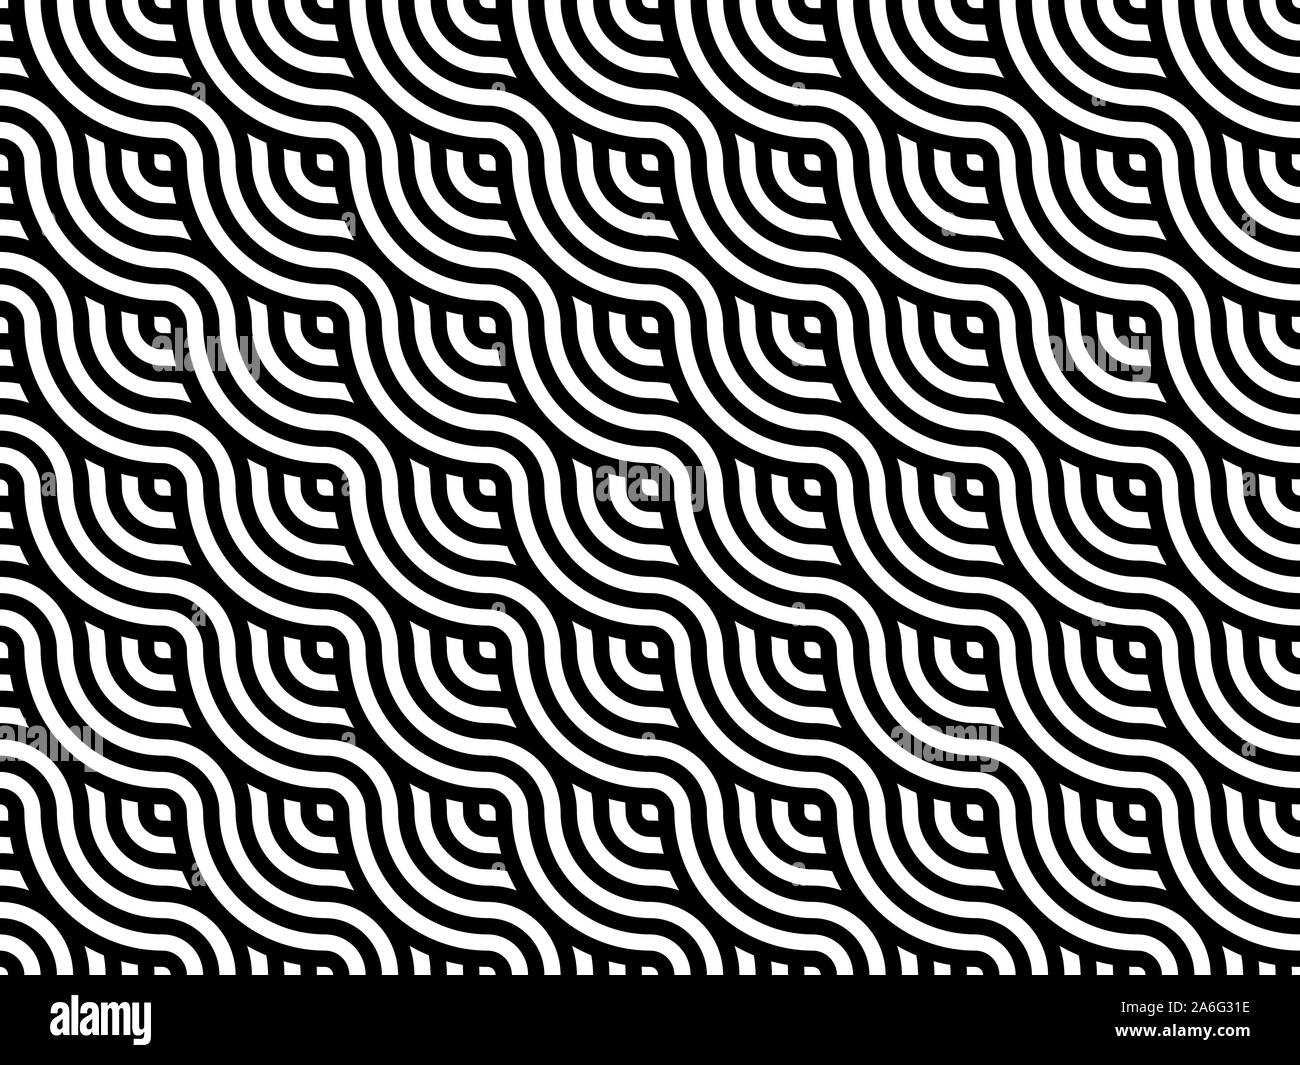 Stile giapponese linee ondulate seamless pattern. Le strisce bianche e nere sullo sfondo di tessitura. Abstract moderno disegno geometrico di piastrelle. Illustrazione Vettoriale Illustrazione Vettoriale